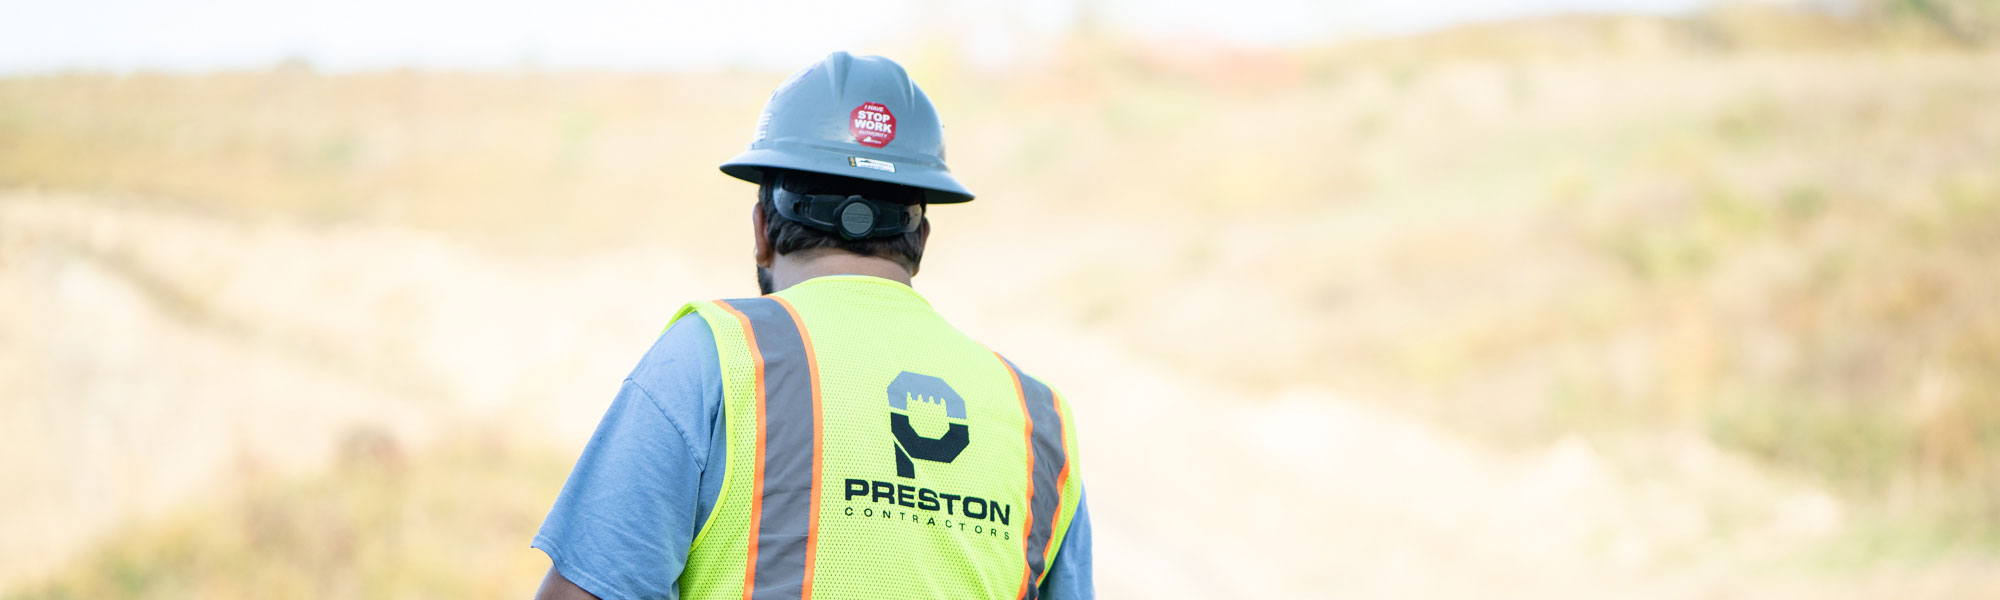 Preston Contractors Employee Wearing Hard Hat & Neon Vest